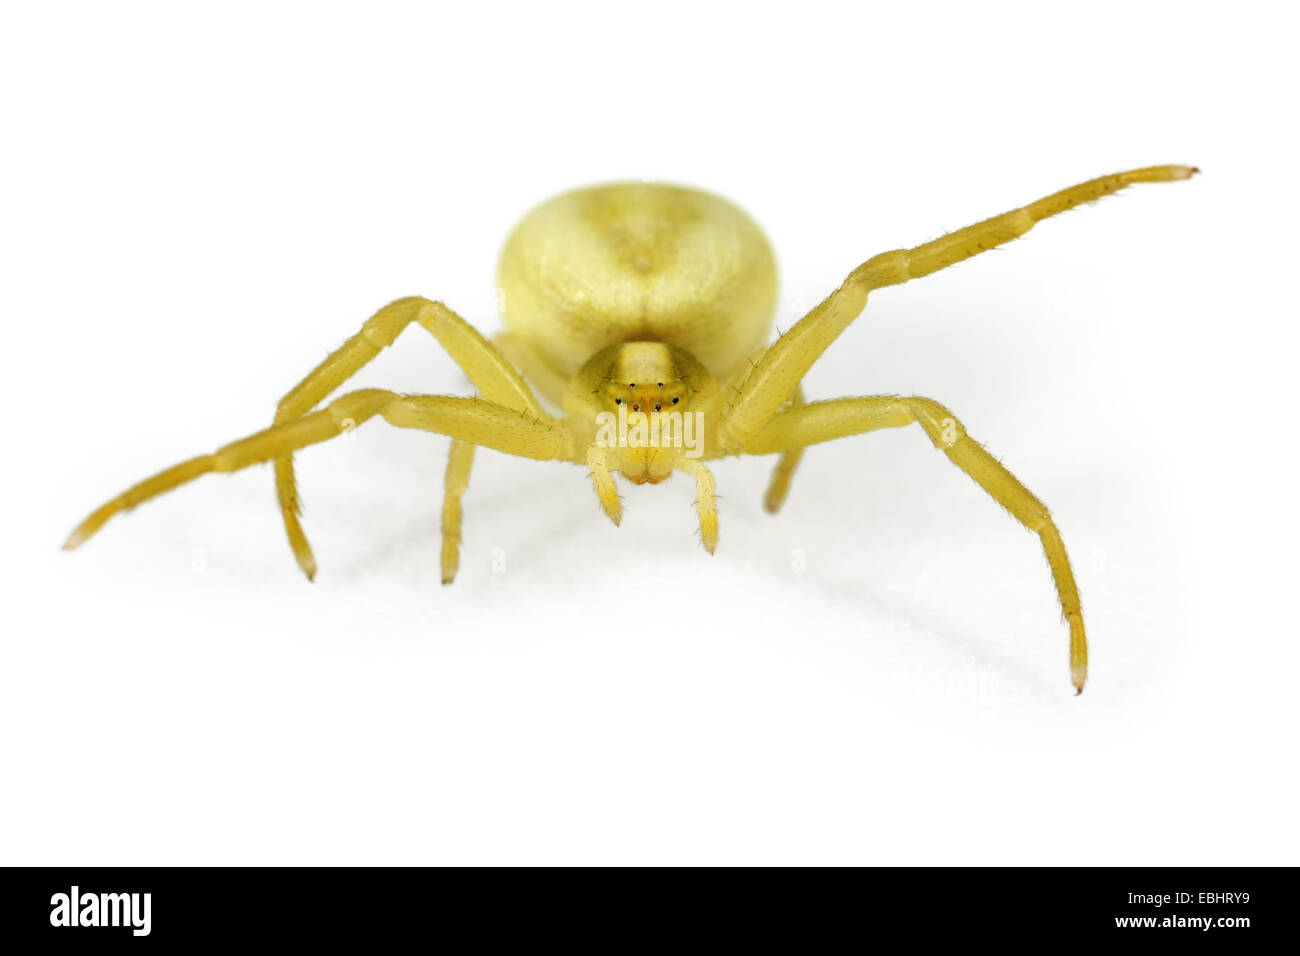 La Verge d'une femme araignée Crabe, Misumena vatia, sur un fond blanc. Partie de la famille Thomisidae, crabes araignées. Banque D'Images